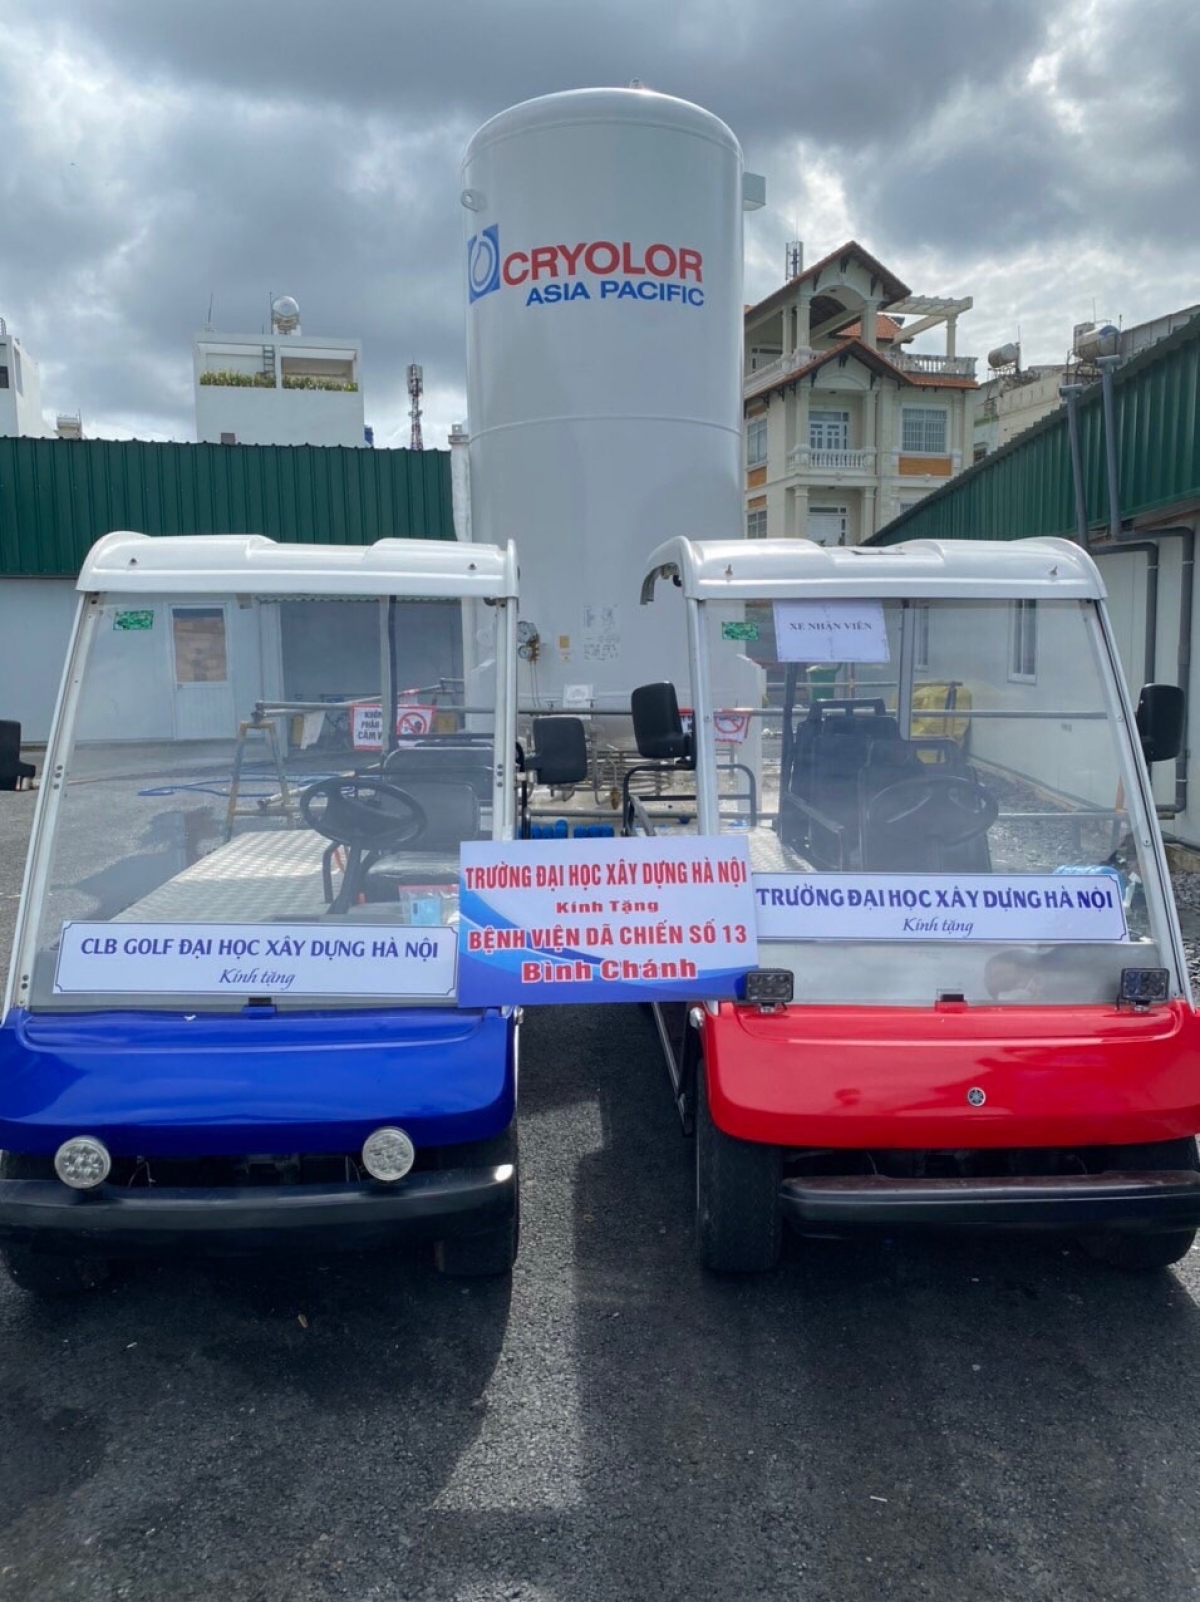 2 trong số 4 chiếc xe điện Trường ĐH Xây dựng Hà Nội
tặng Bệnh viện dã chiến số 13 Bình Chánh TP. Hồ Chí Minh 